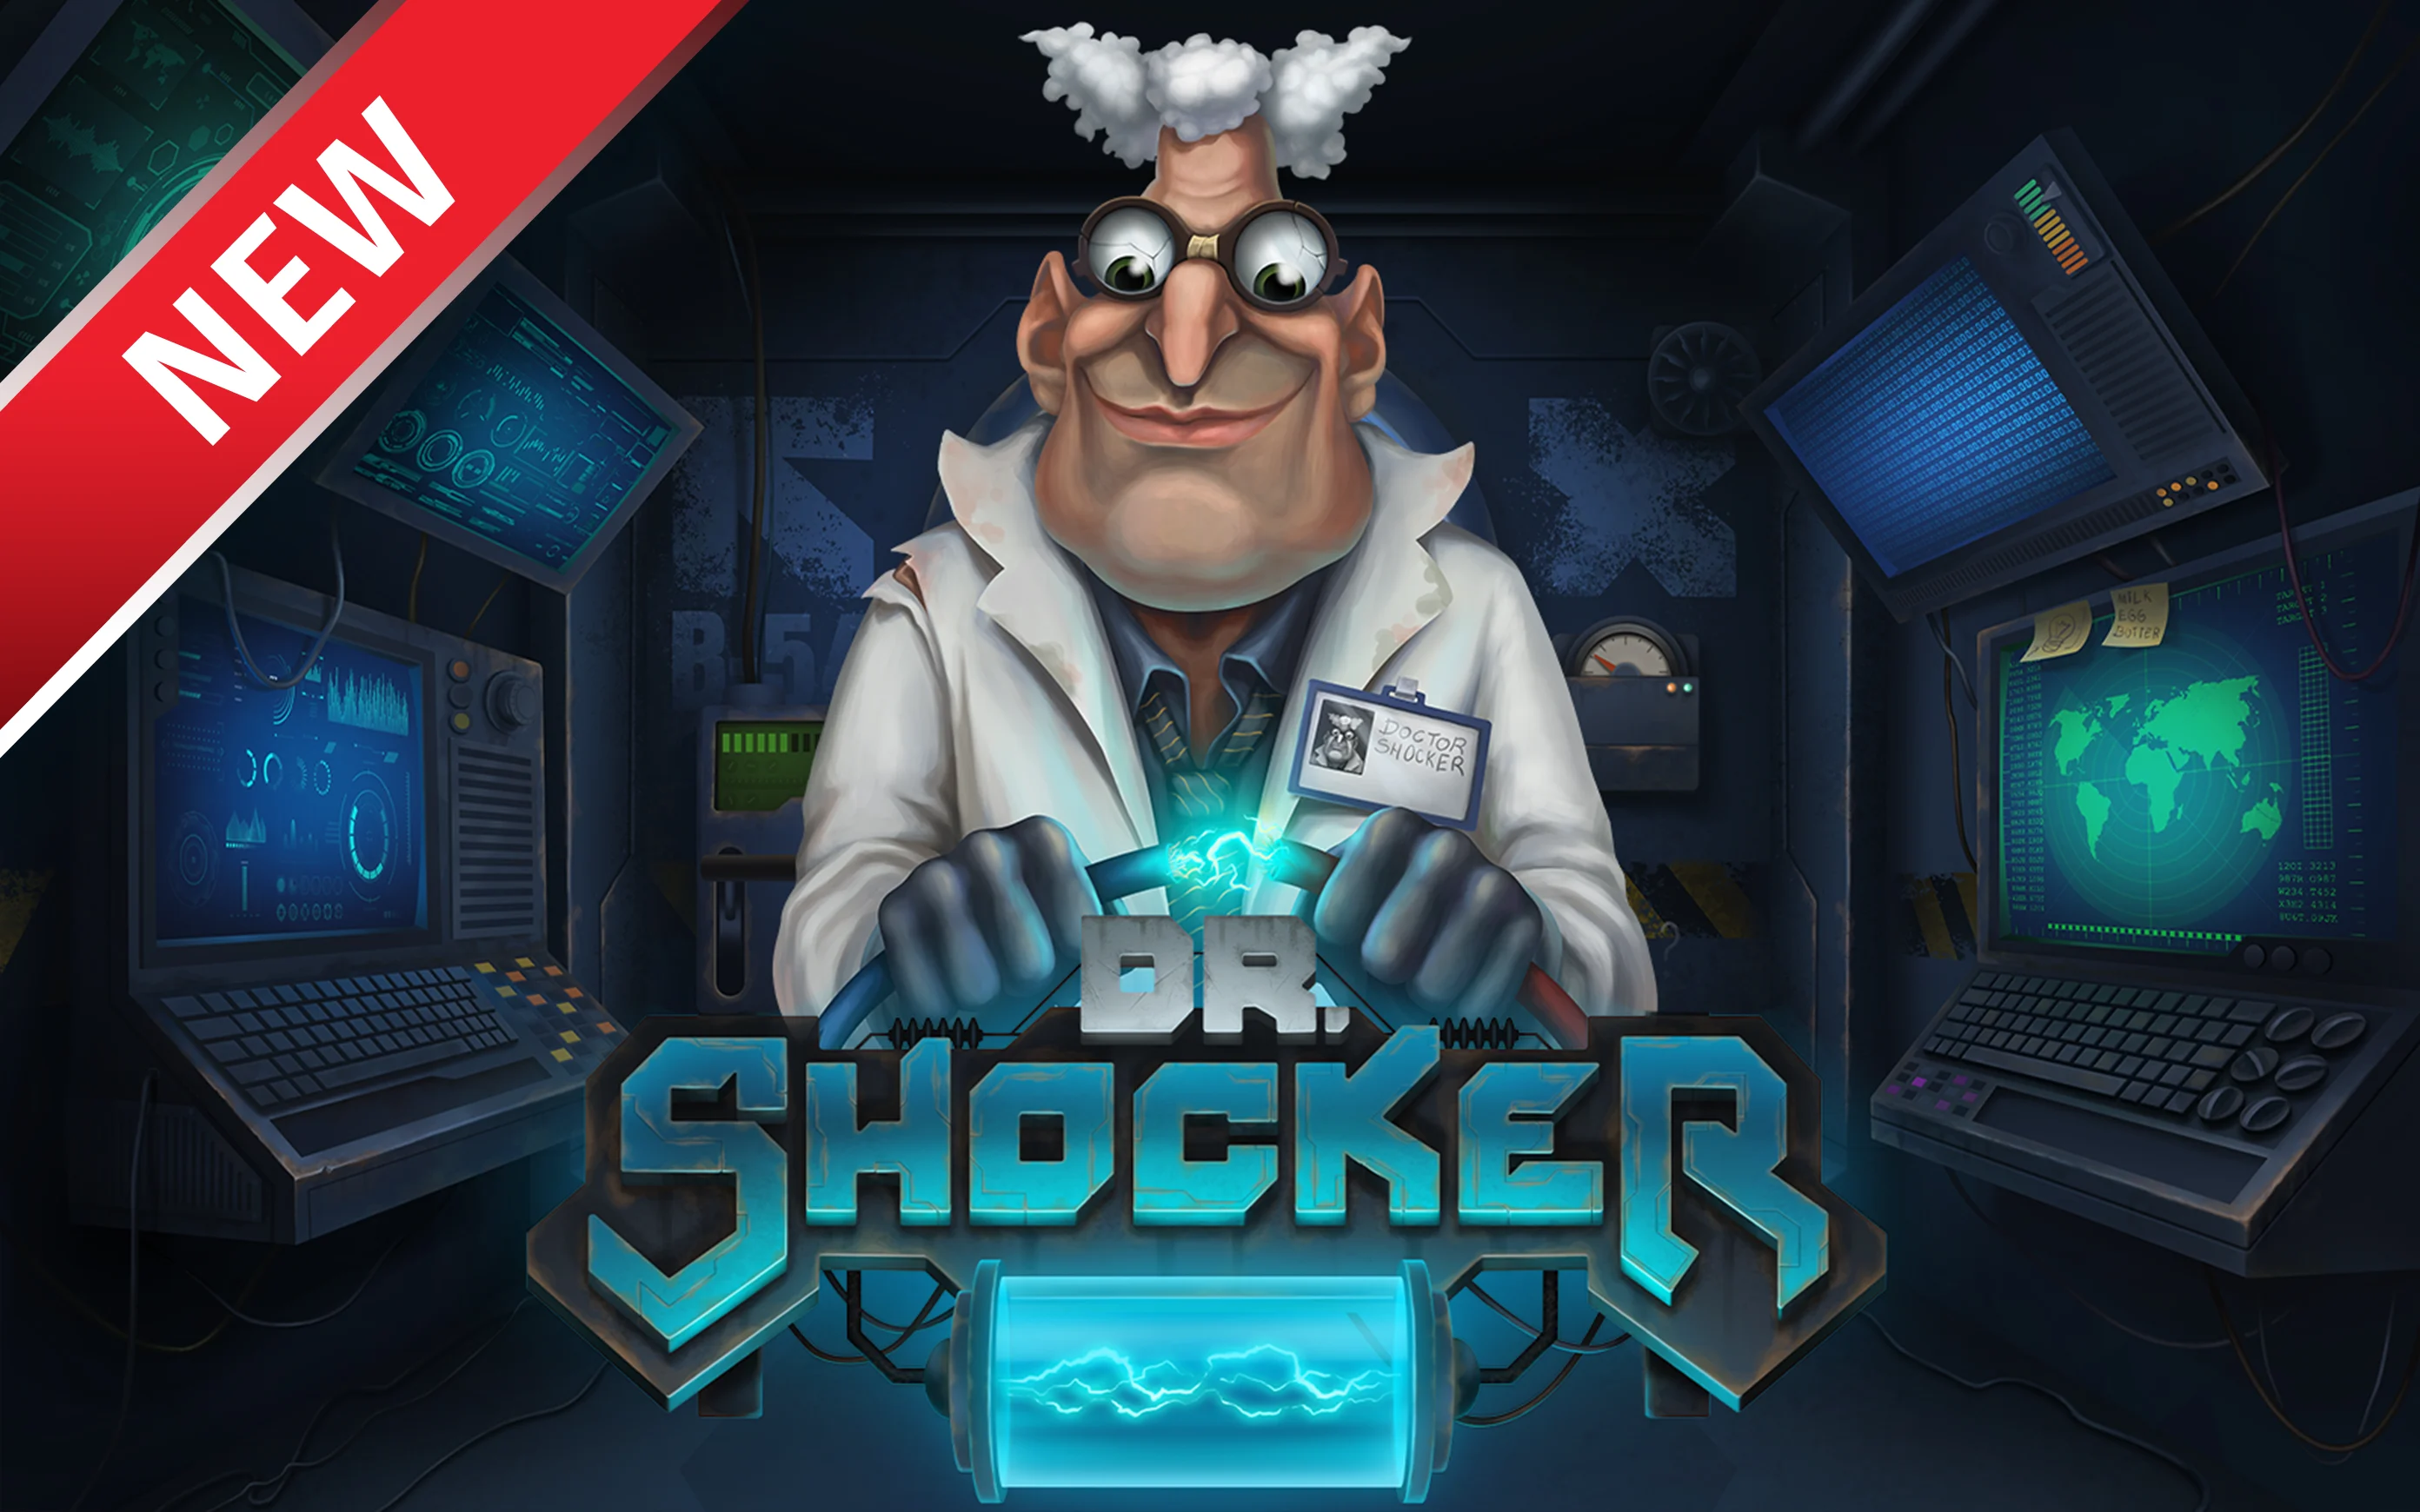 Παίξτε Dr. Shocker στο online καζίνο Starcasino.be